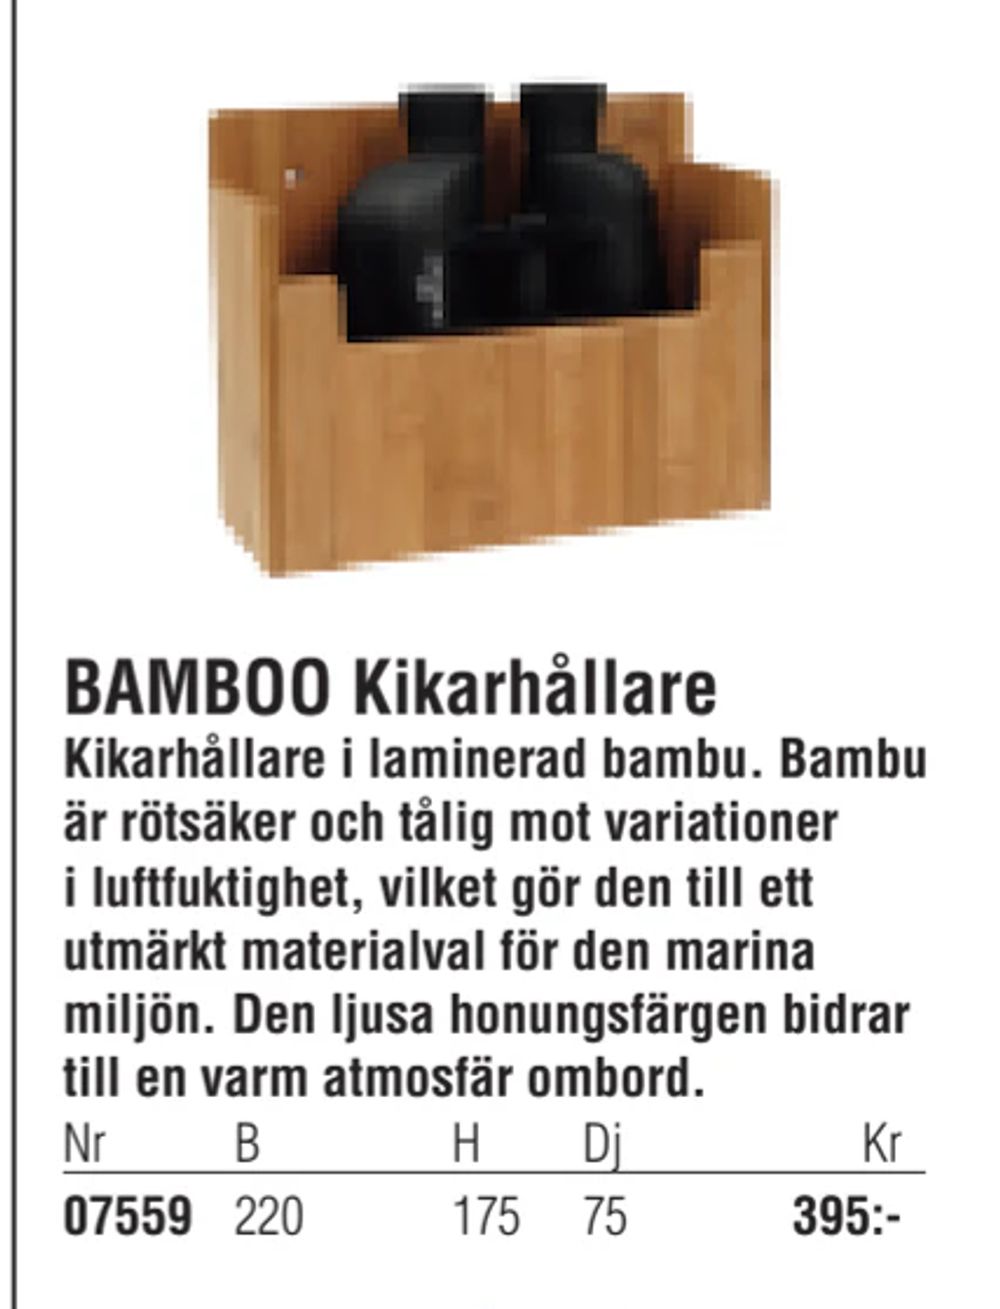 Erbjudanden på BAMBOO Kikarhållare från Erlandsons Brygga för 395 kr